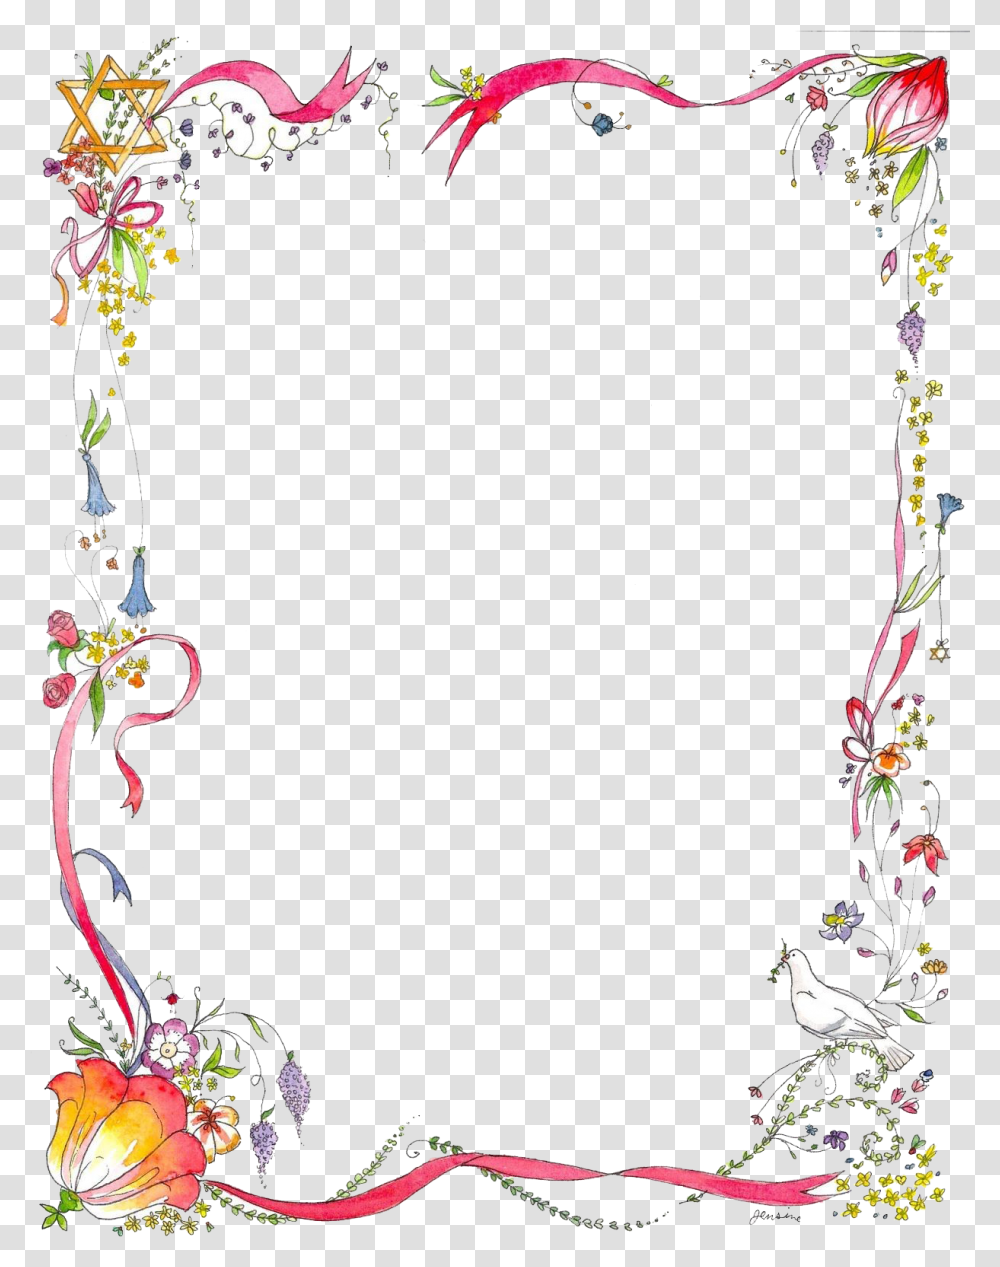 Page Border Design Flower Border Design For Project, Floral Design, Pattern Transparent Png